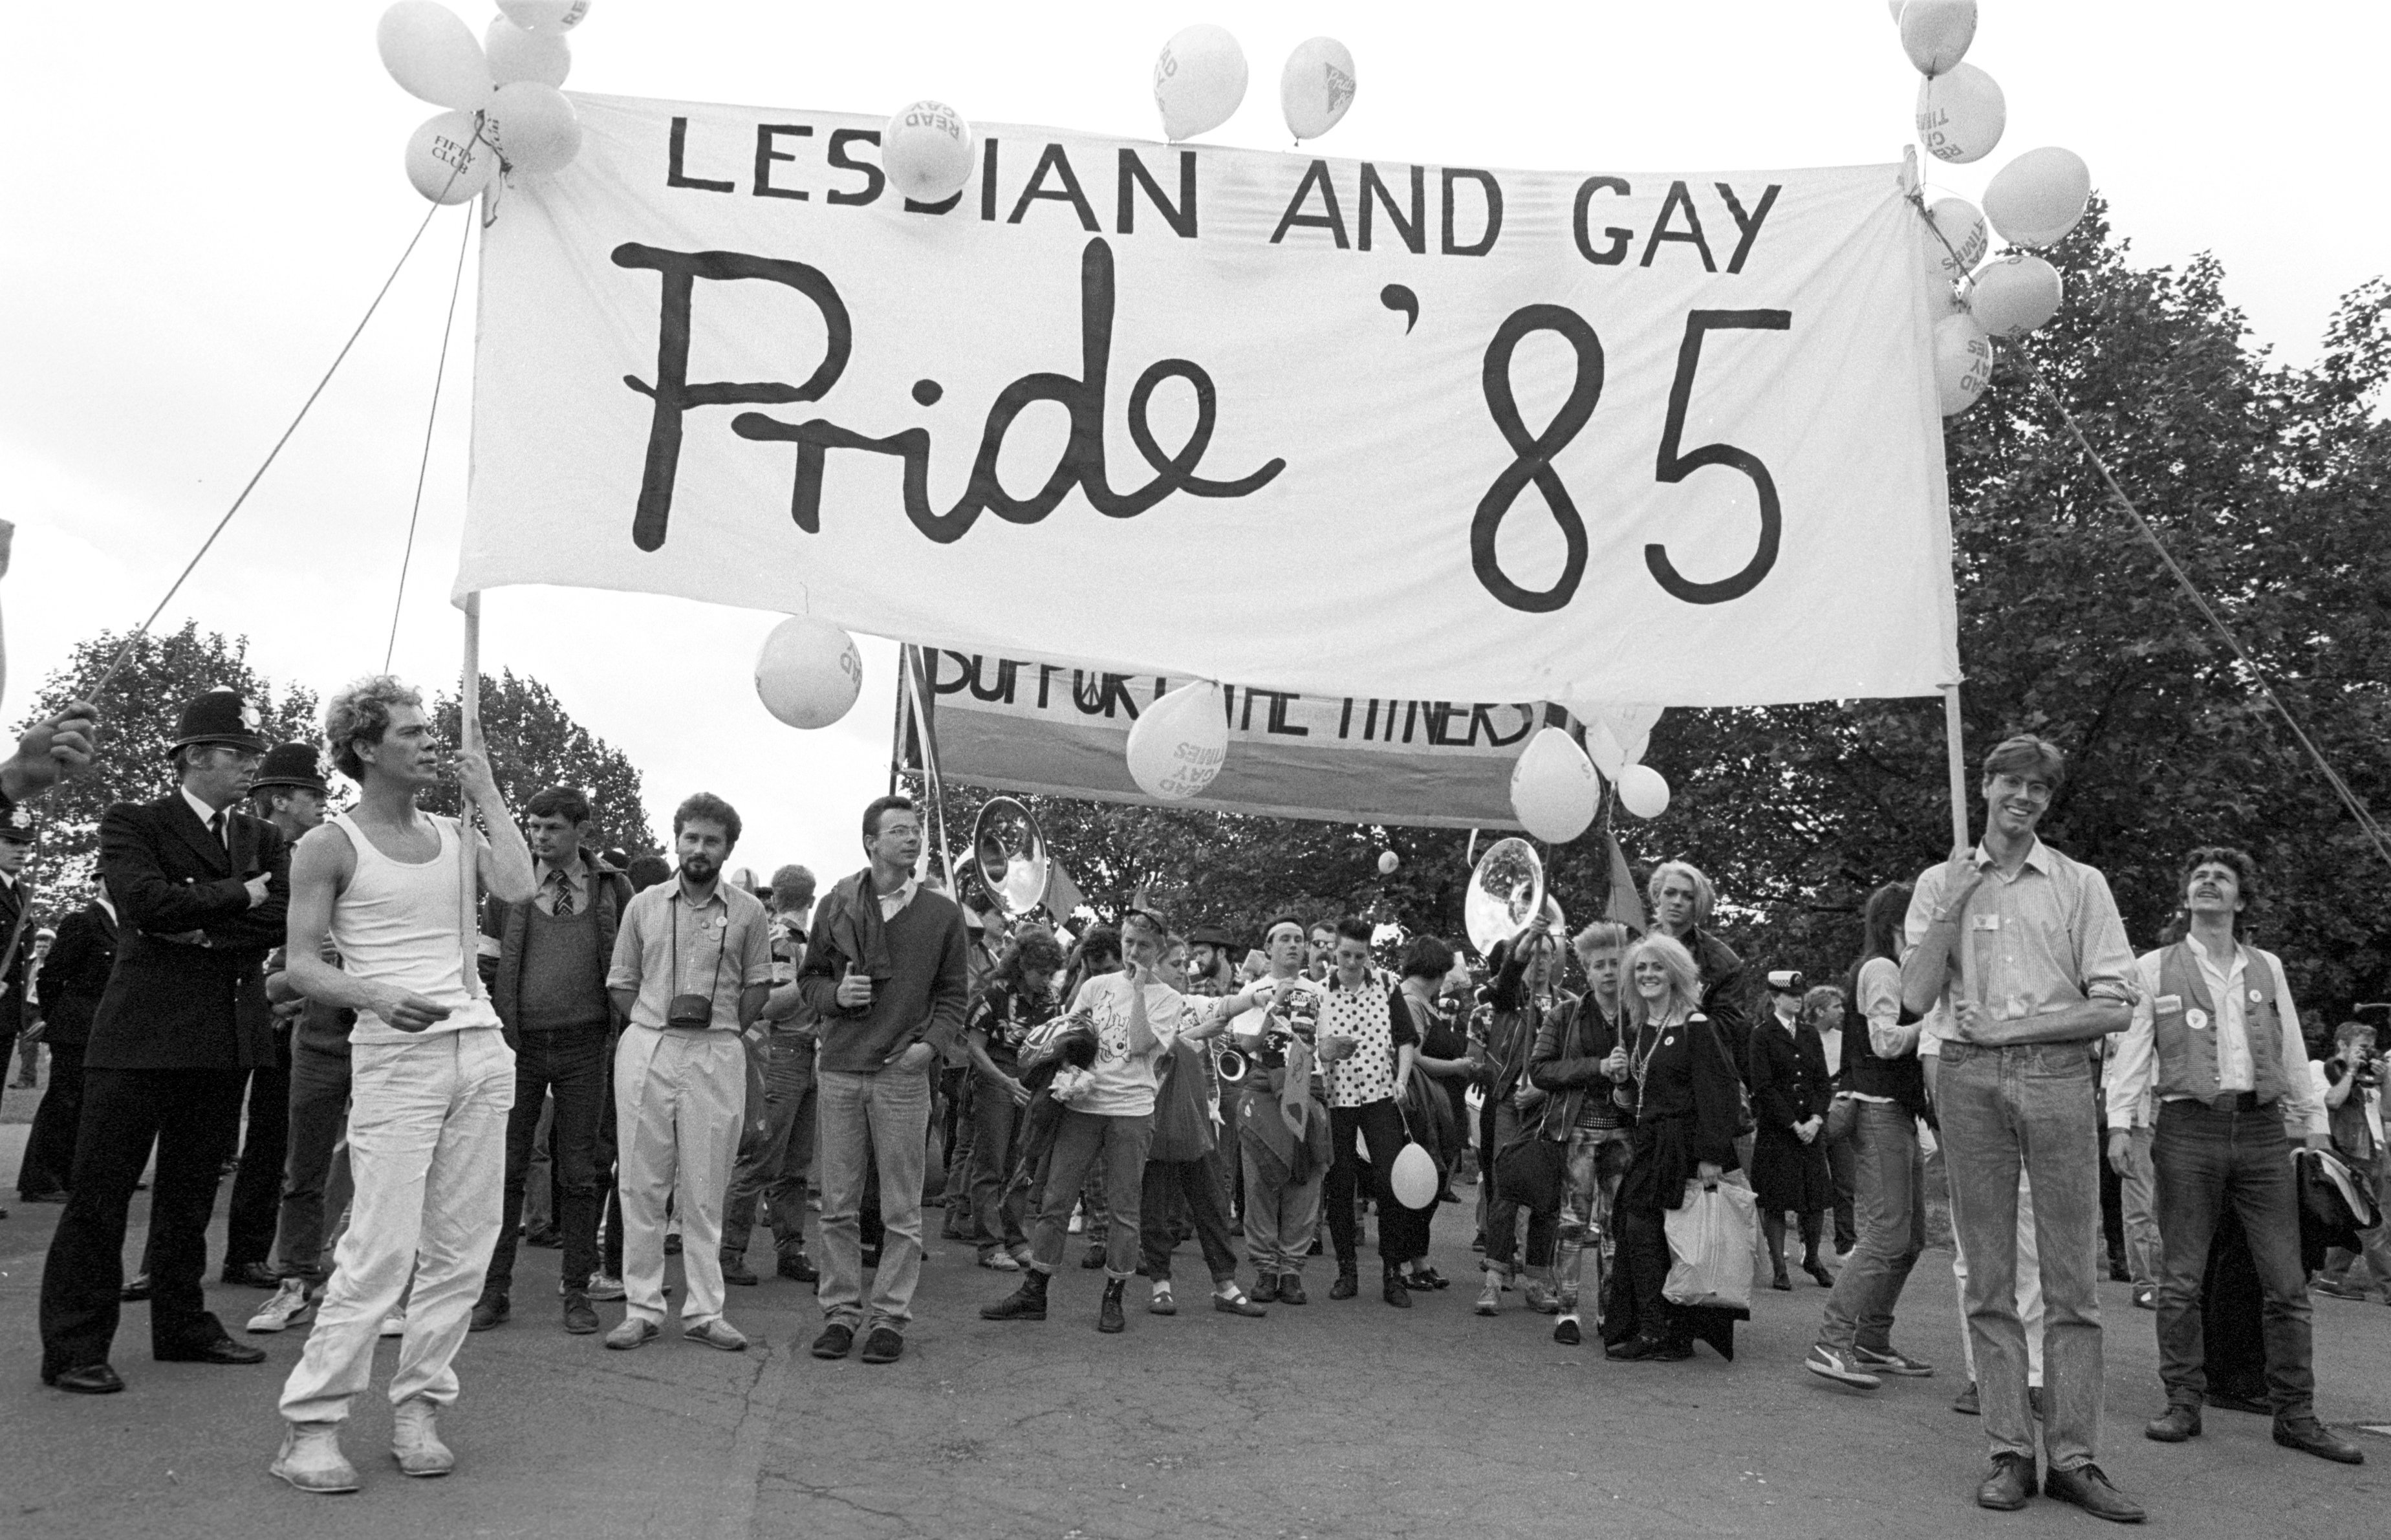 history of gay pride parade in us